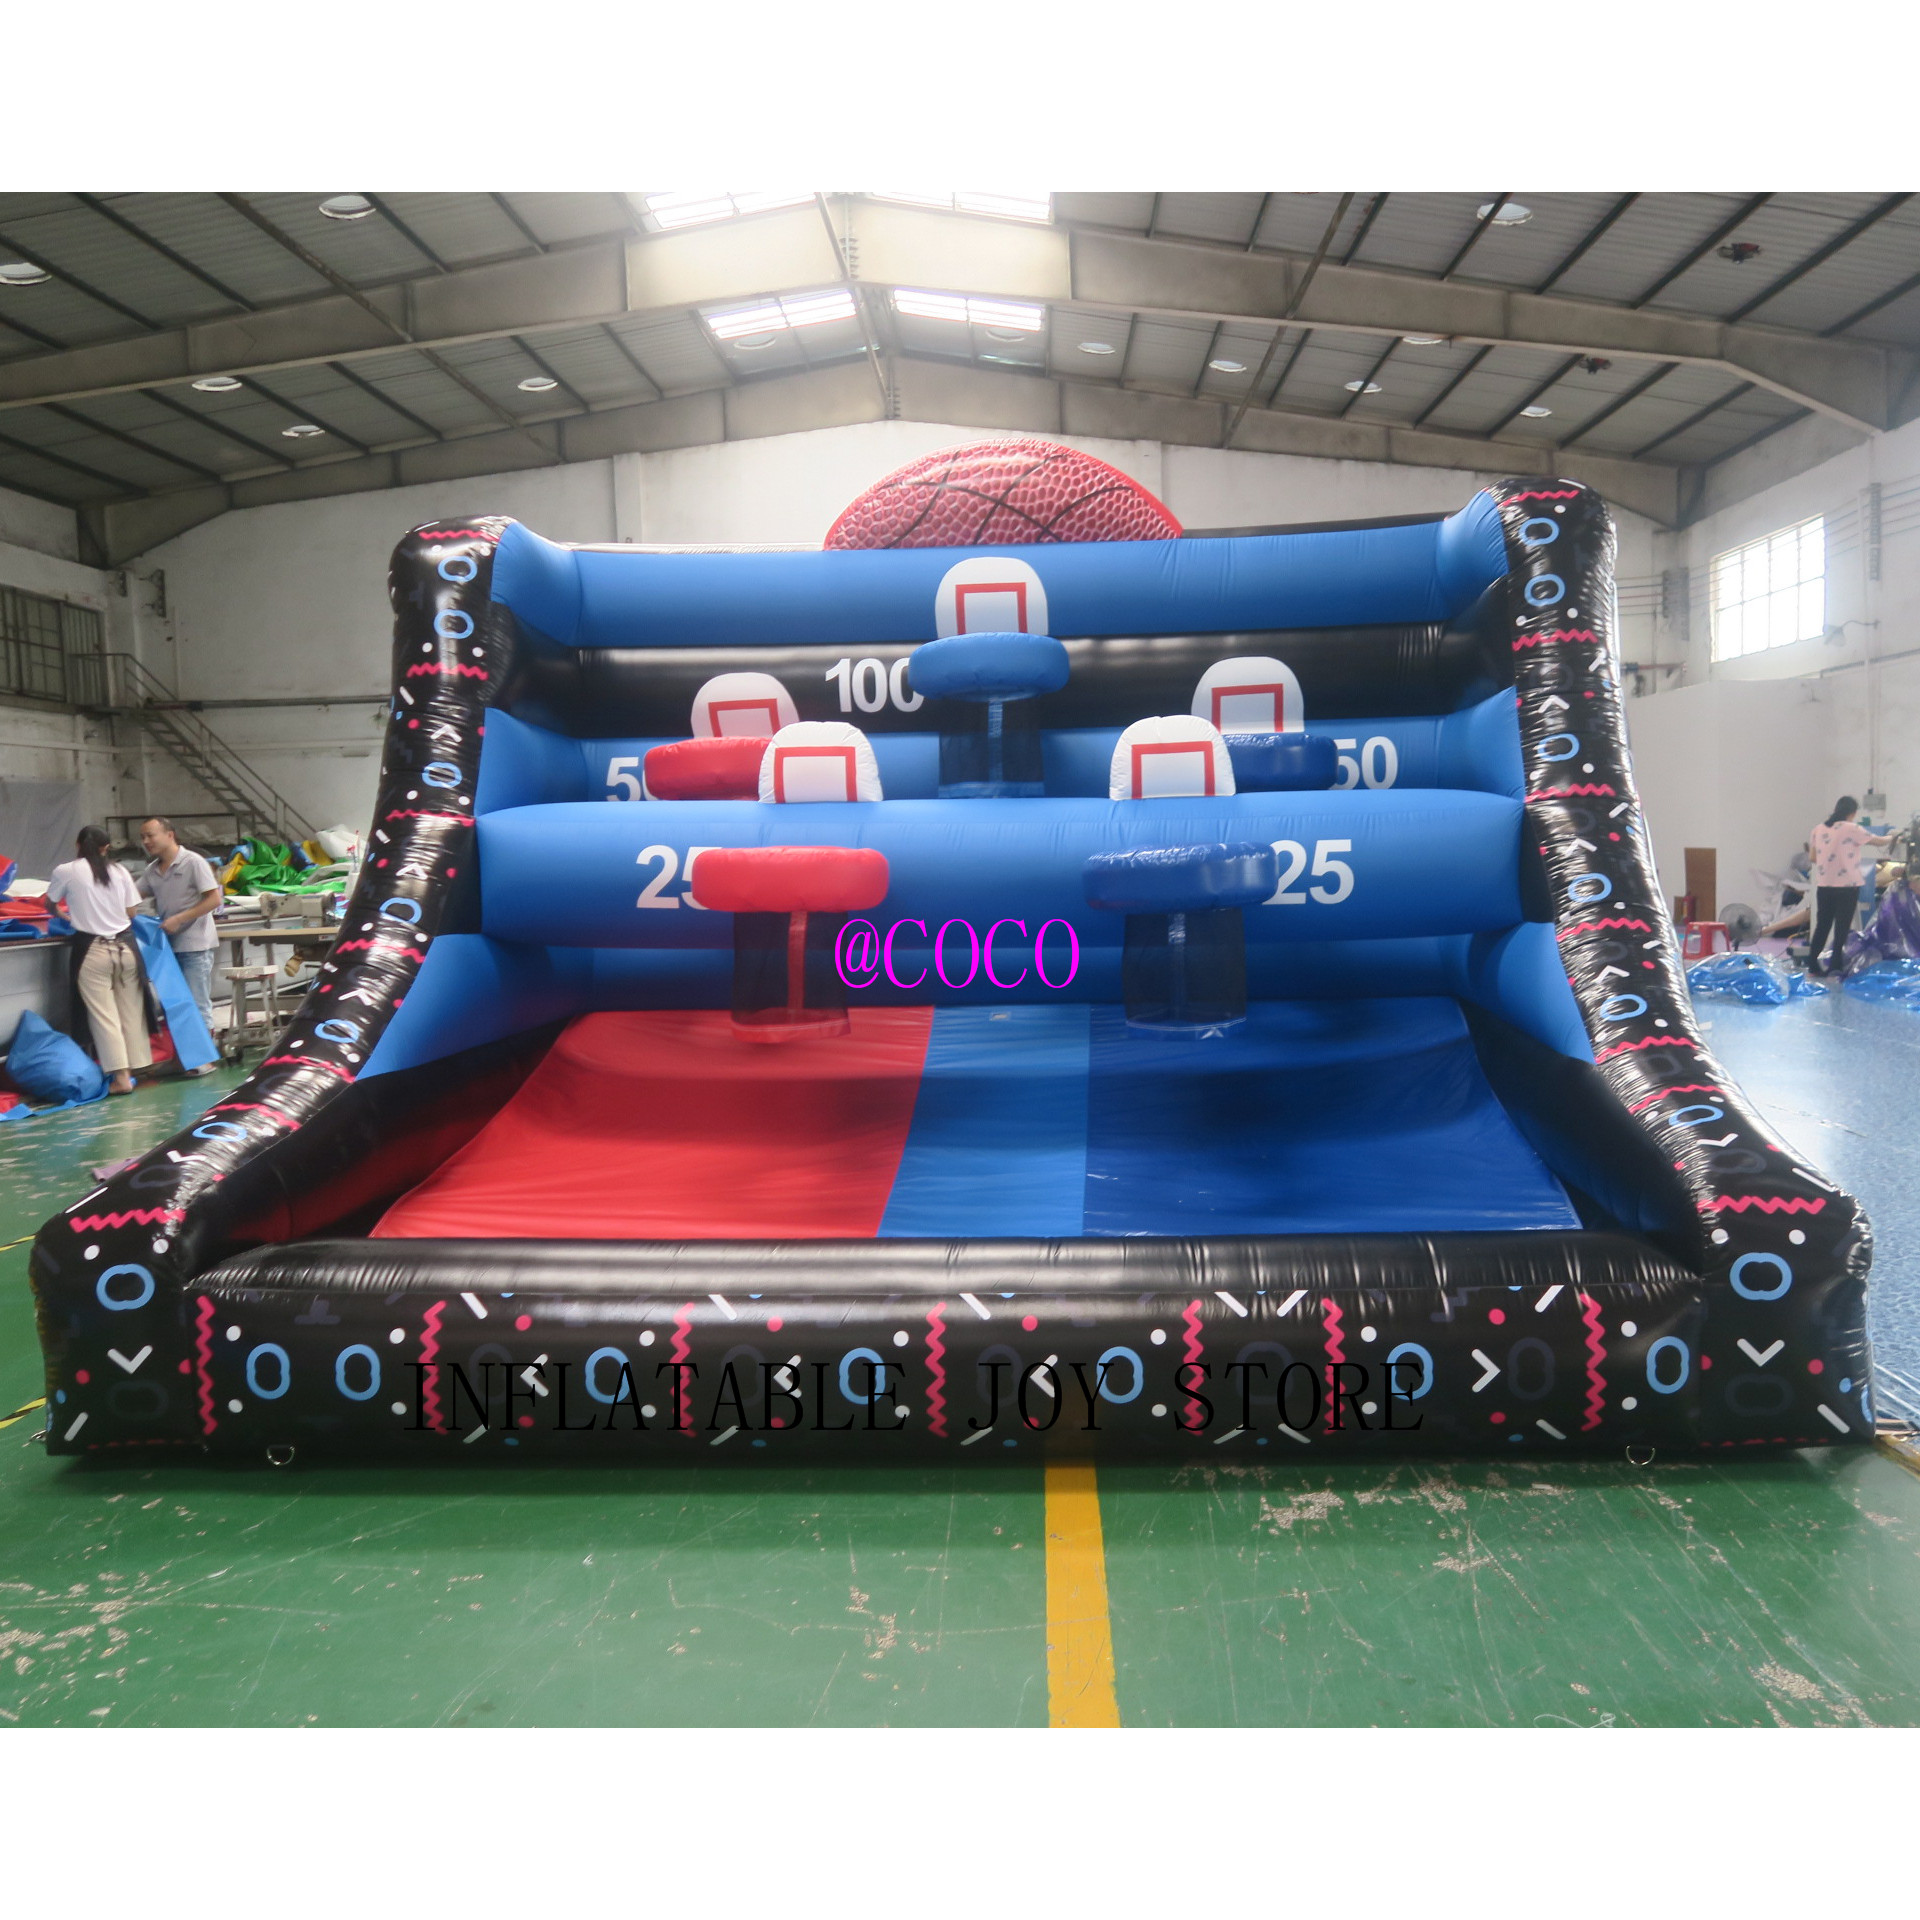 Atividades ao ar livre 4mwx3mlx3.5mh (13,2x10x11,5ft) com 6 bolas de bola de basquete inflável jogos de arremesso ao ar livre de jogo esportivo para crianças e adultos